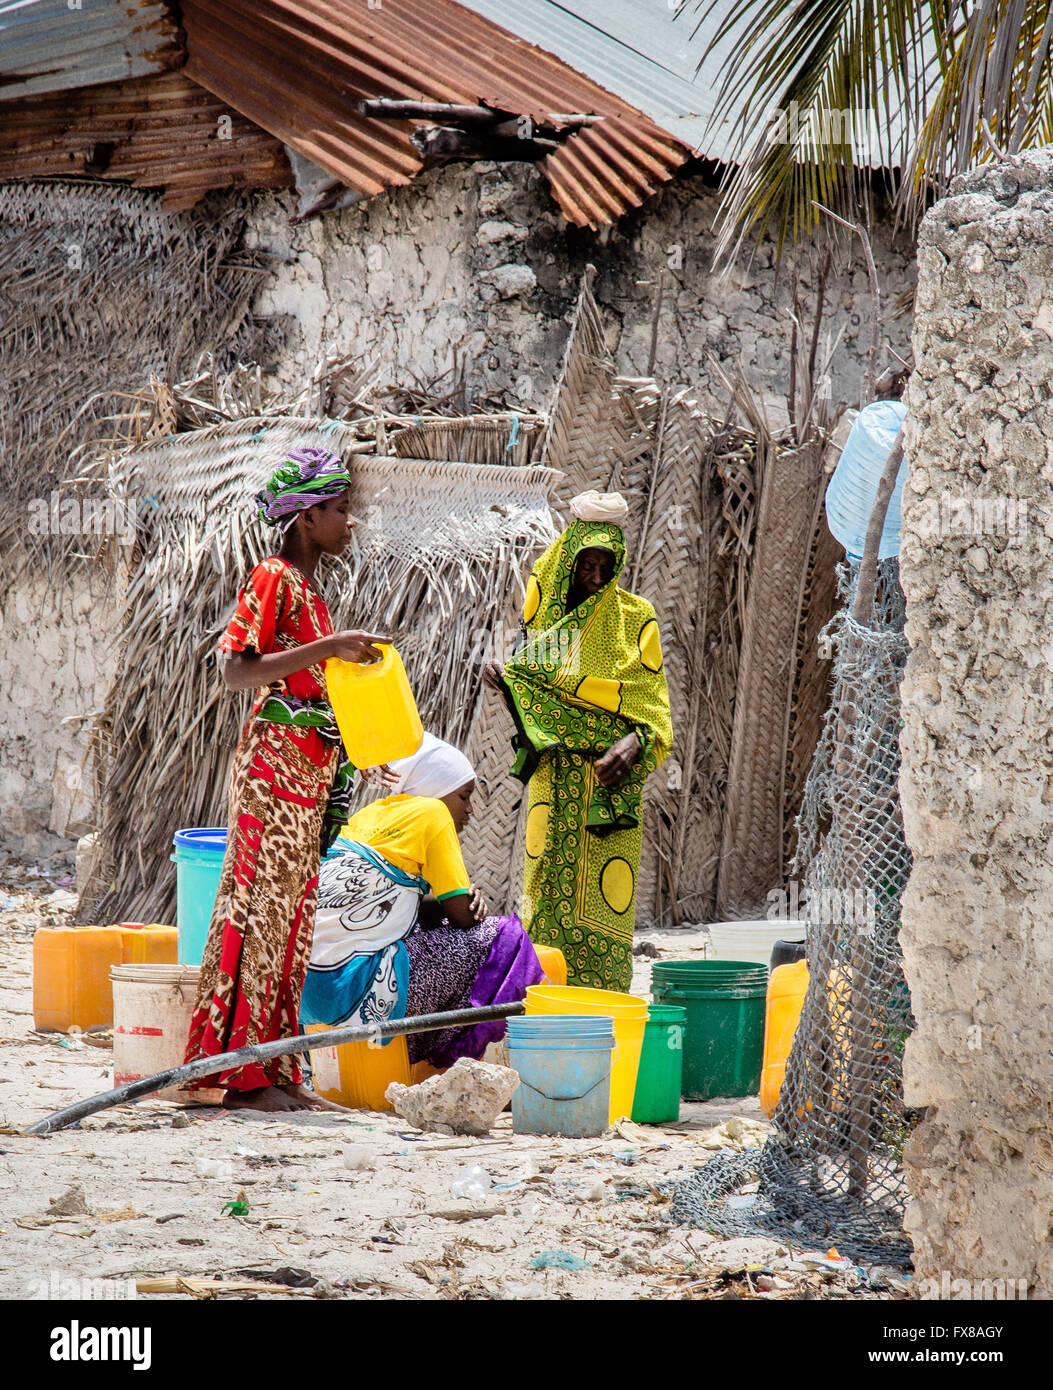 Des femmes vêtues de recueillir l'eau dans des contenants en plastique à partir d'un robinet communal dans un village tanzanien sur Zanzibar Afrique de l'Est Banque D'Images